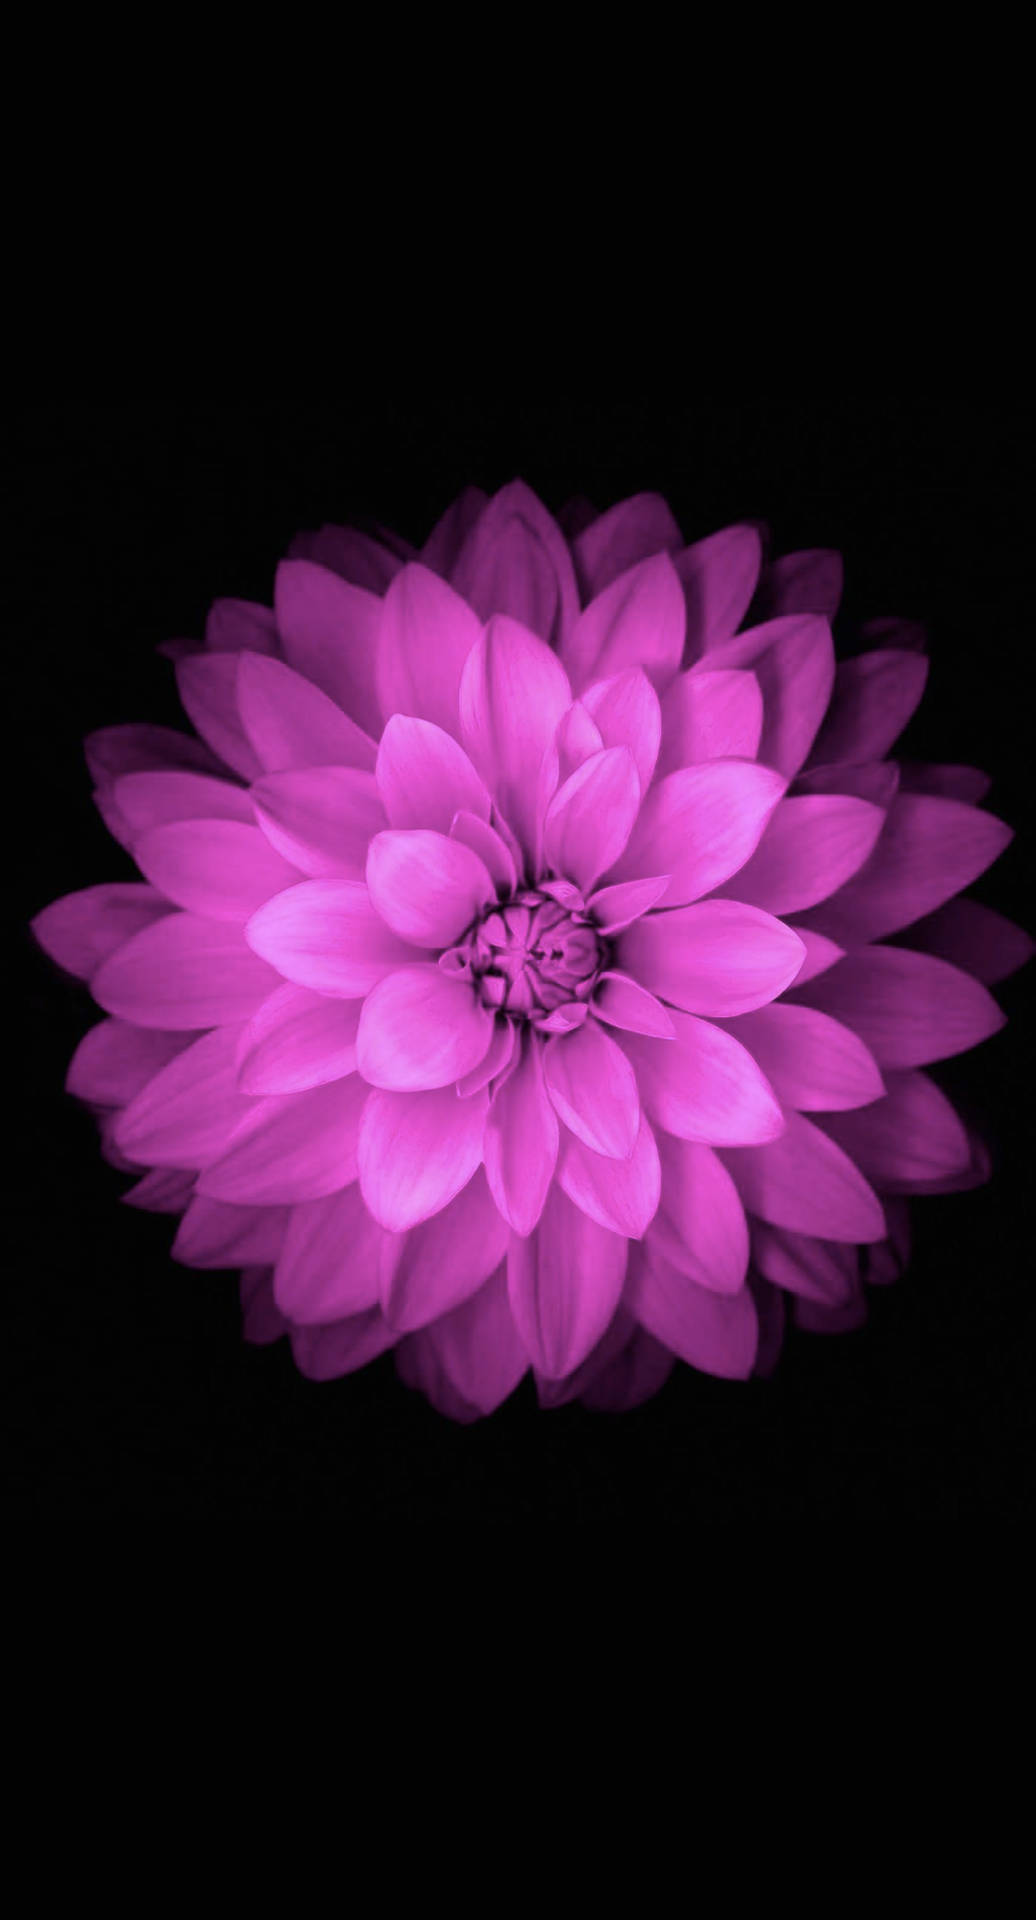 Flower In Purple Iphone Wallpaper